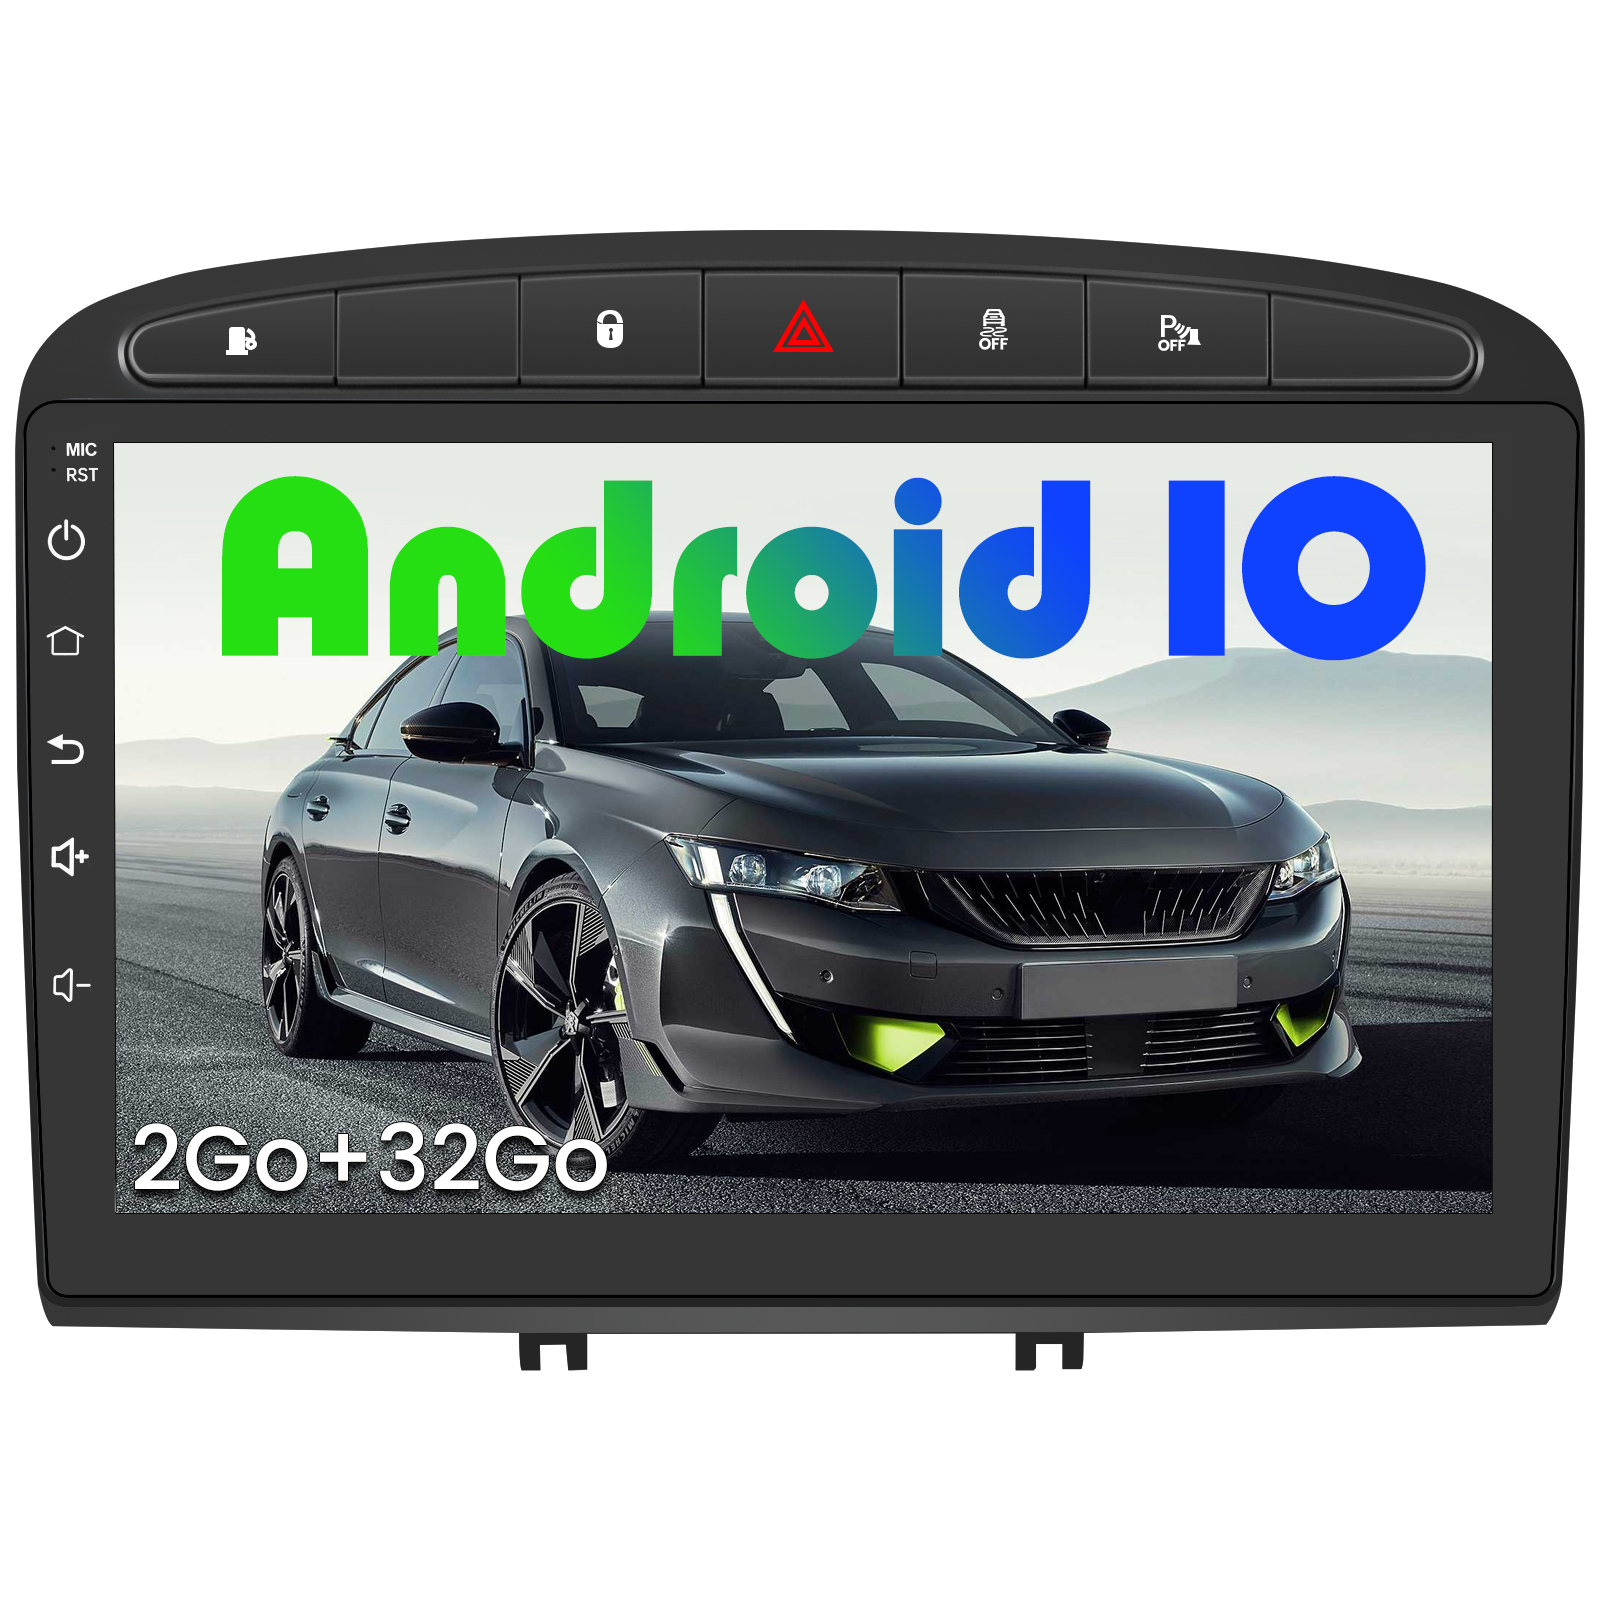 2Go+32Go Android Auto/WiFi/Commande au Volant/Bluetooth/Aide au Stationnement 10 Pouces Écran Tactile HD Android 10.0 avec GPS /Carplay Intégré AWESAFE Autoradio pour Peugeot 2008/208 